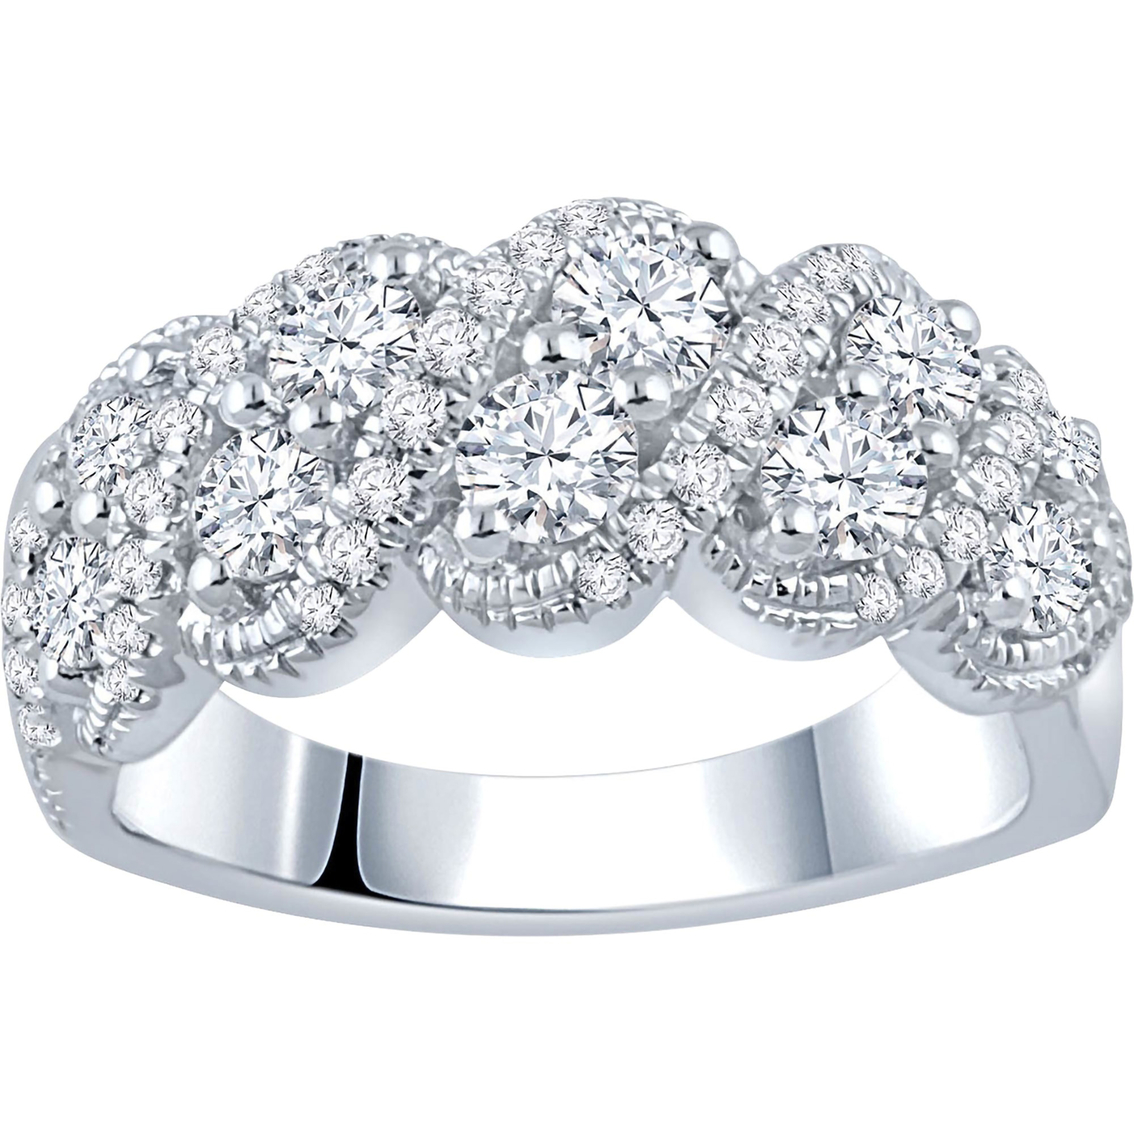 14k White Gold 1 And 1/2 Ctw Tdw Diamond Anniversary Ring | Anniversary ...